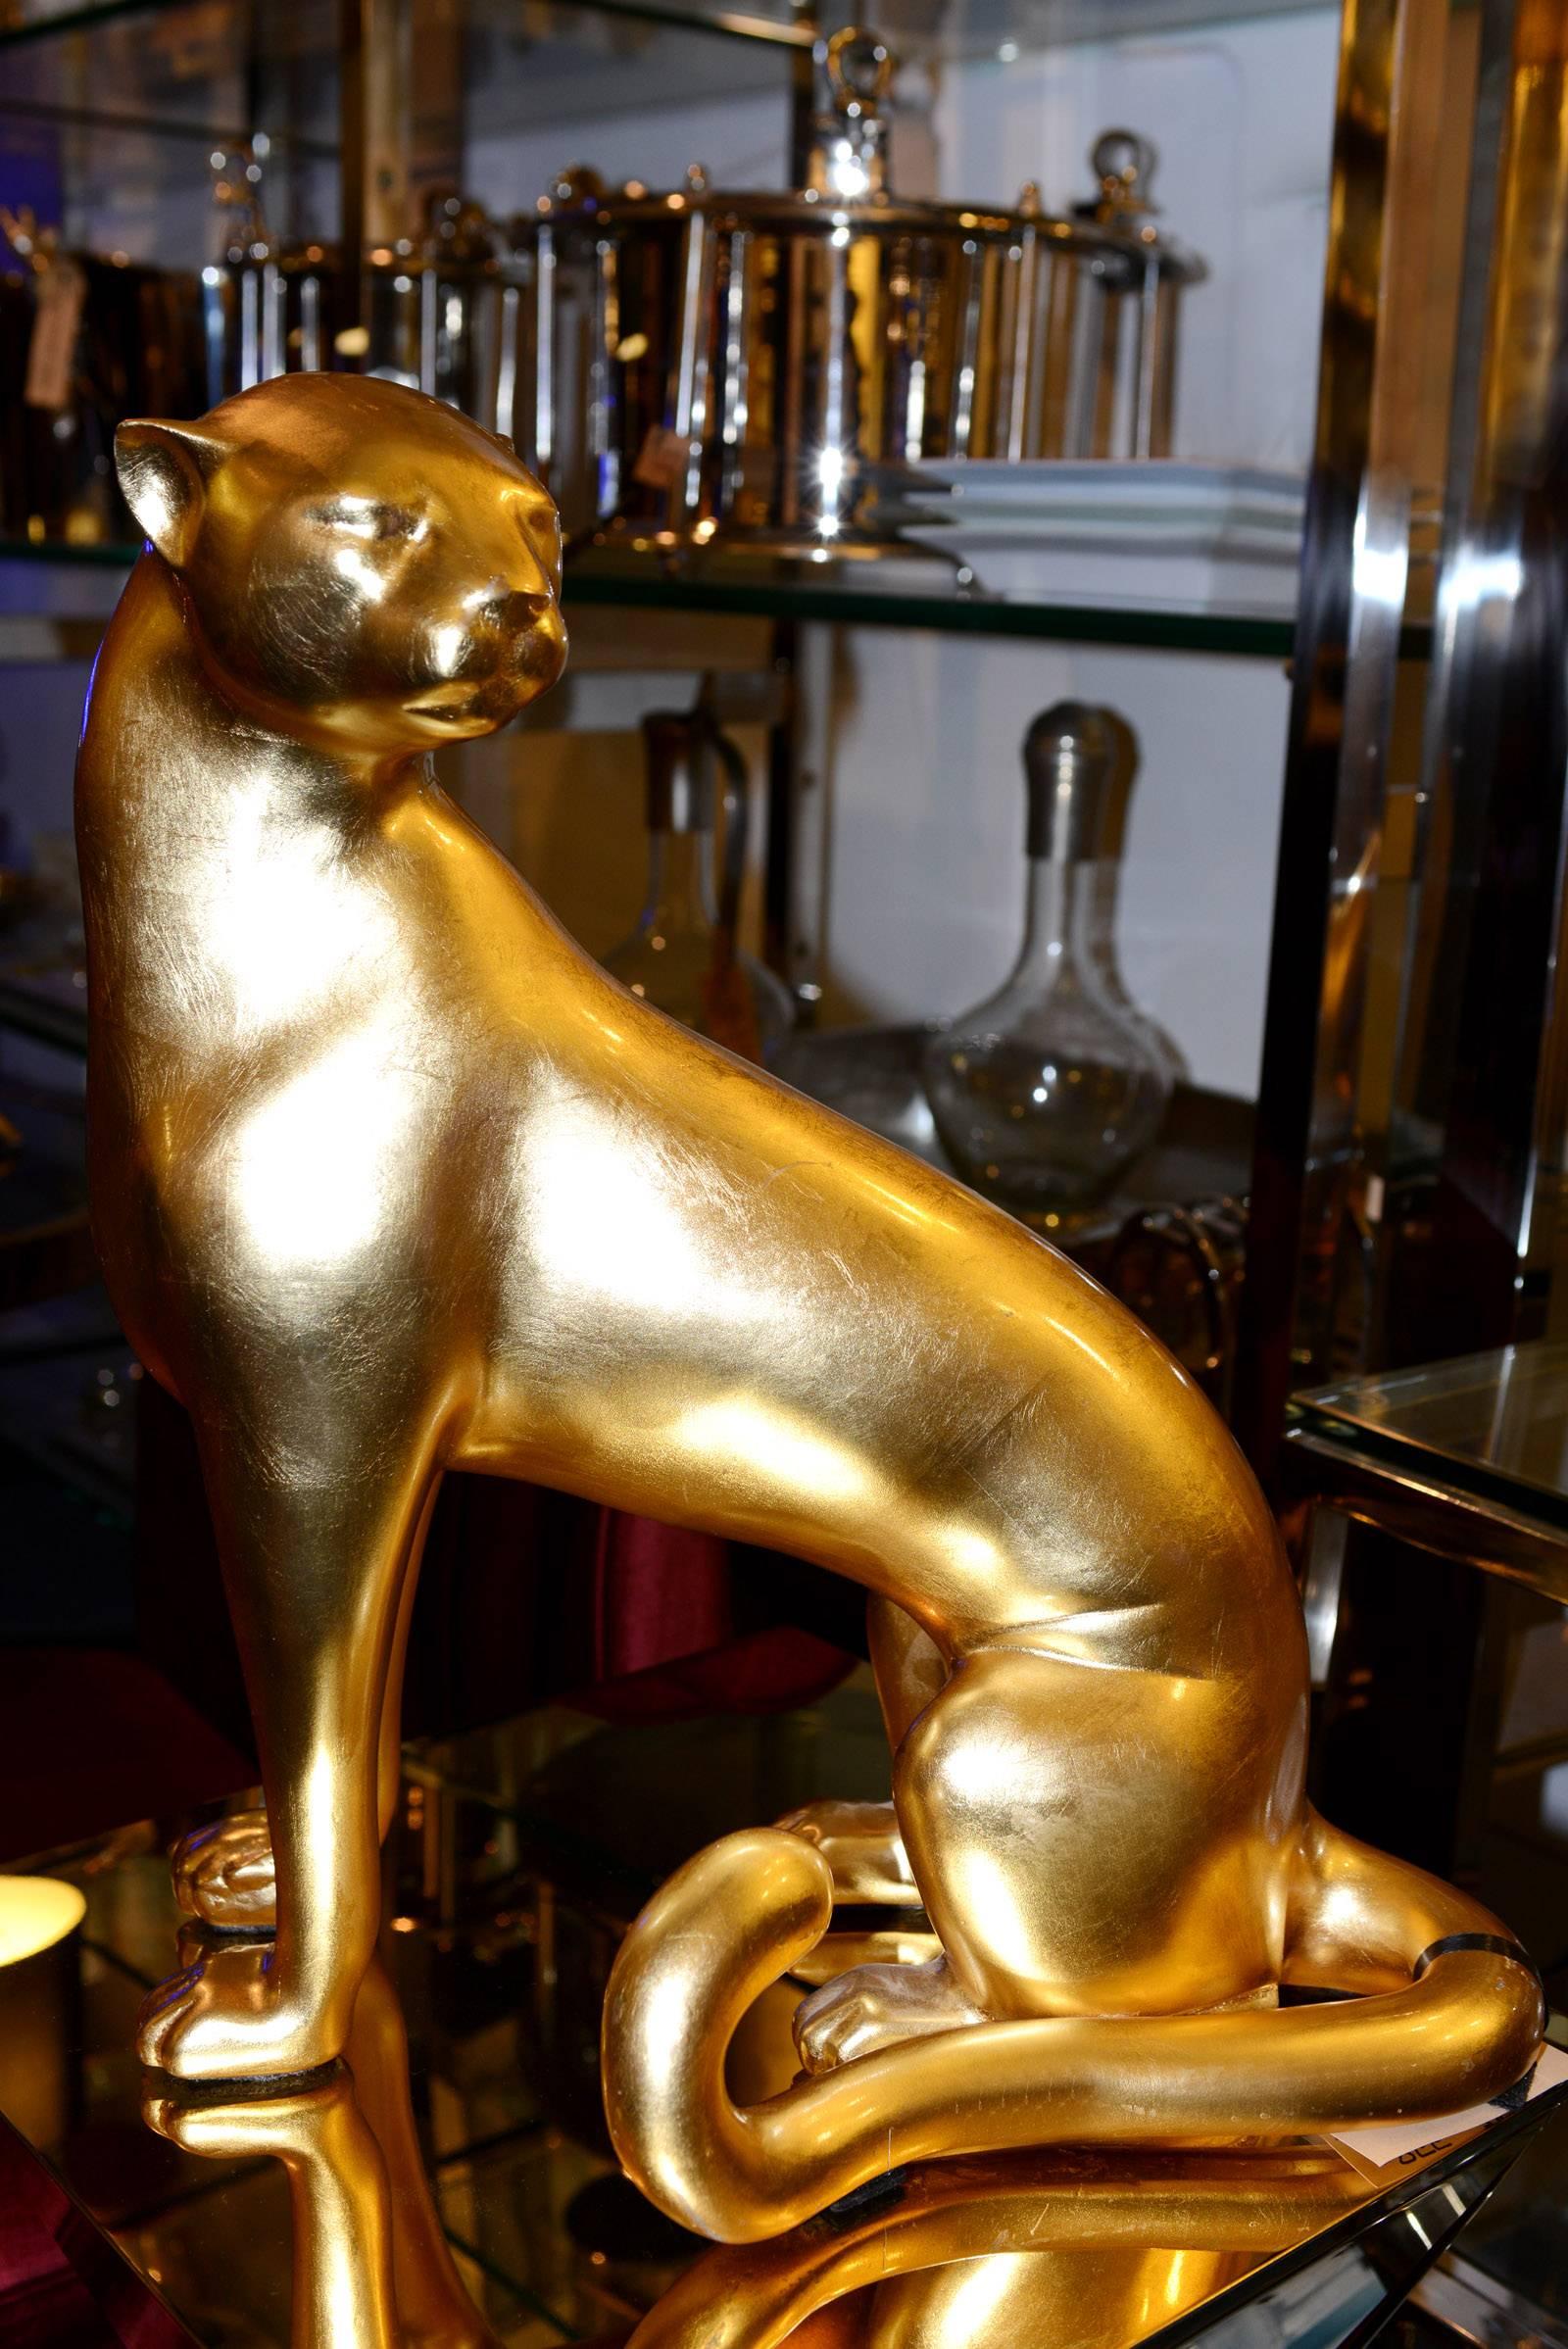 Sculpture léopard en résine en finition dorée,
avec de la peinture à la feuille d'or.